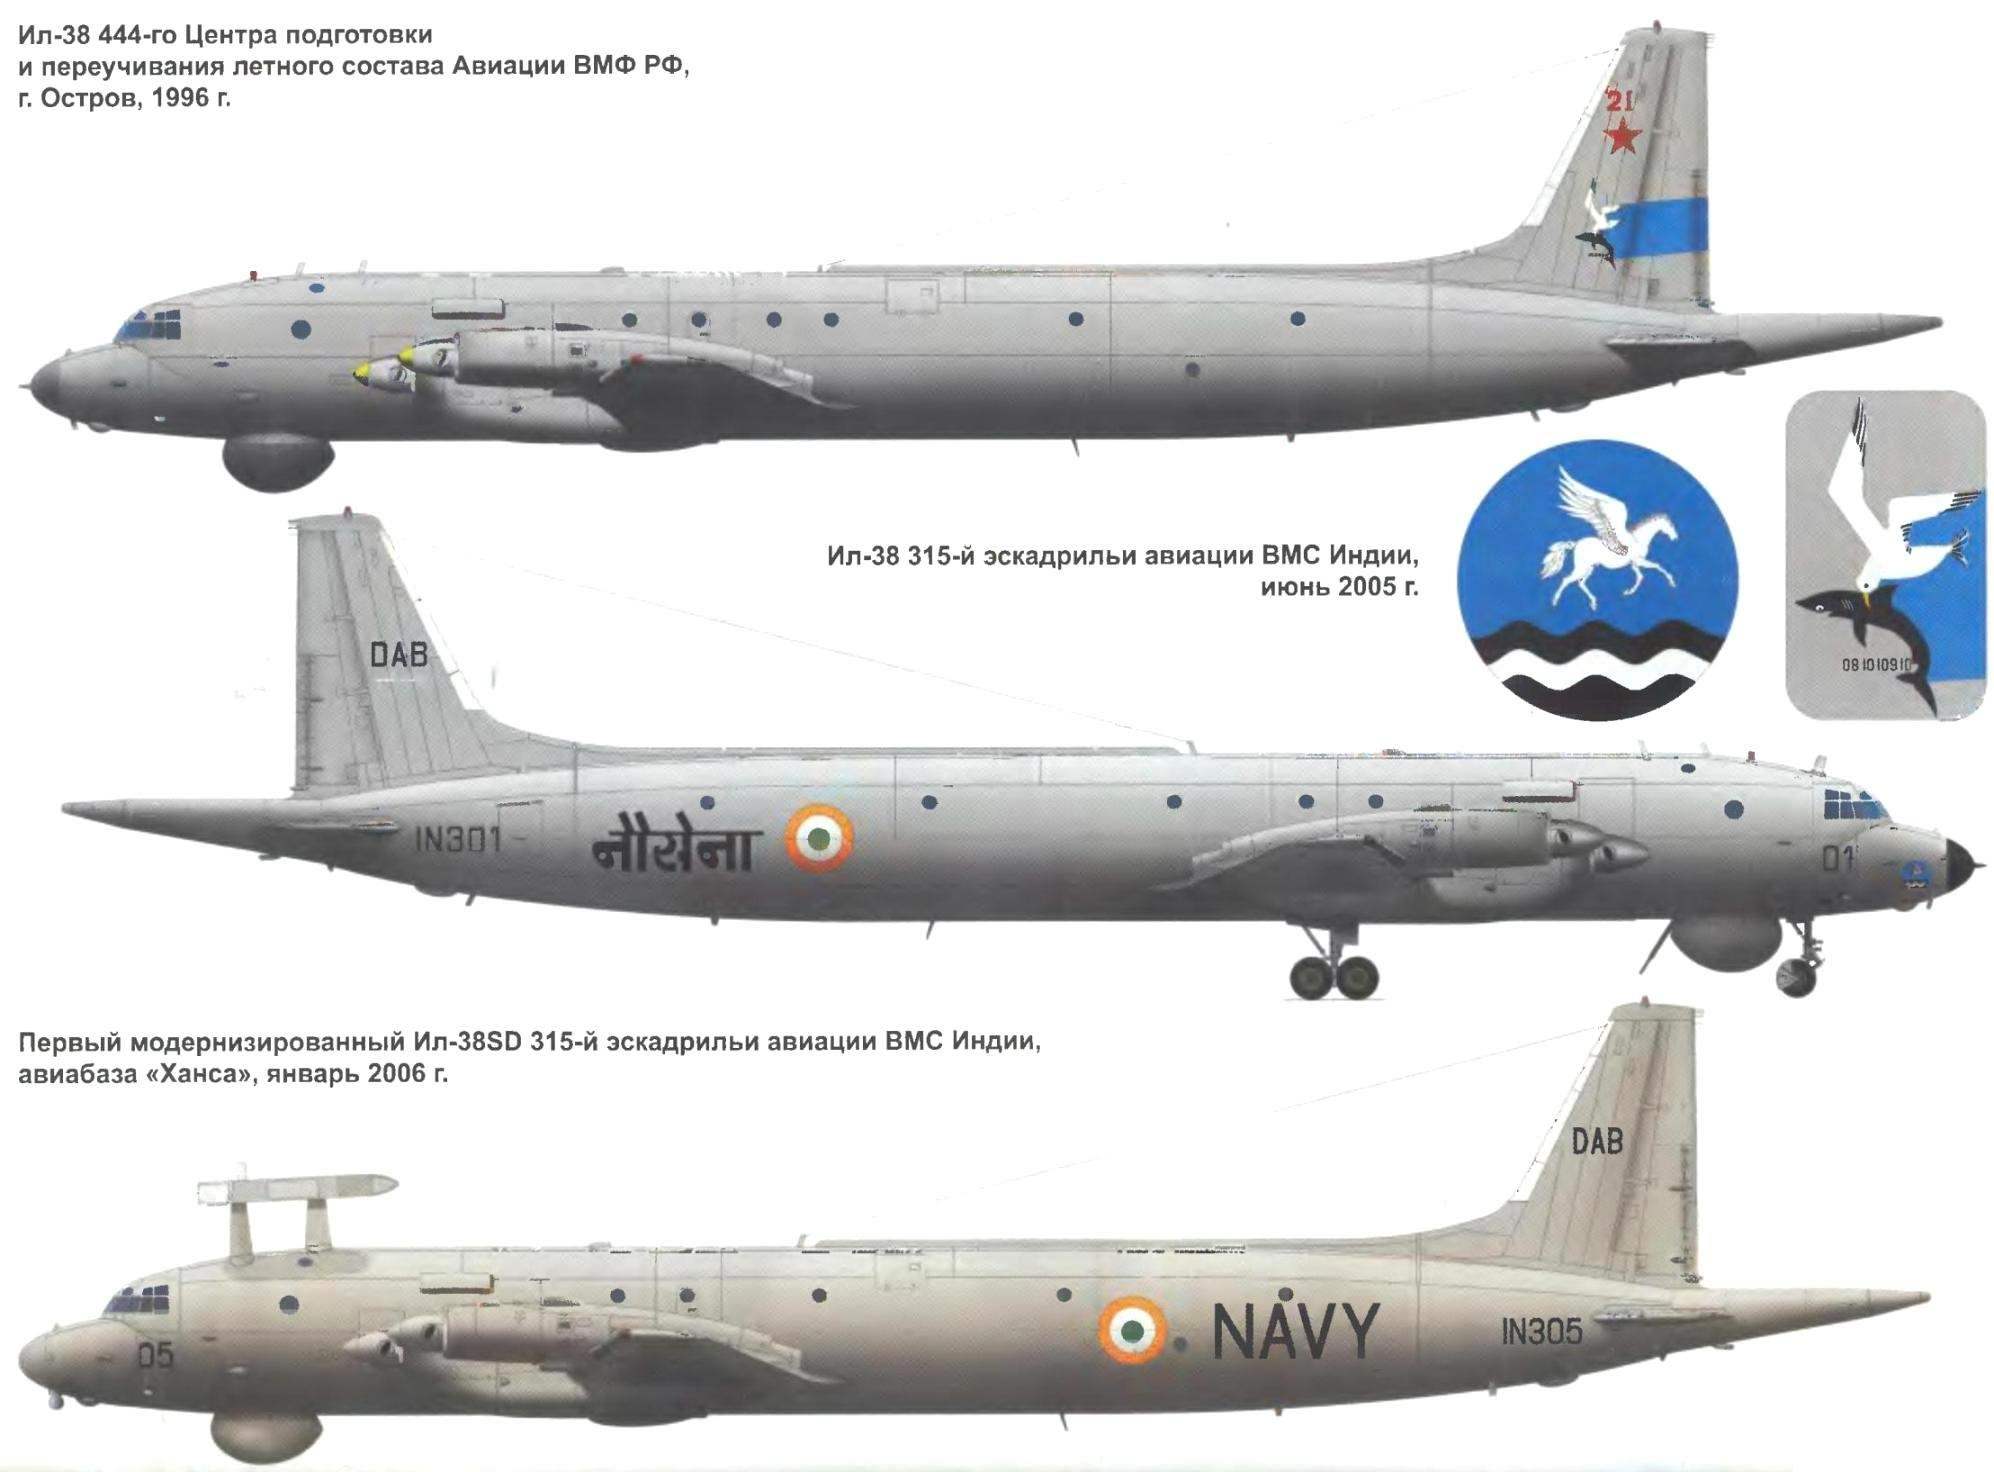 Противолодочный самолет ил-38н: технические характеристики, вооружение